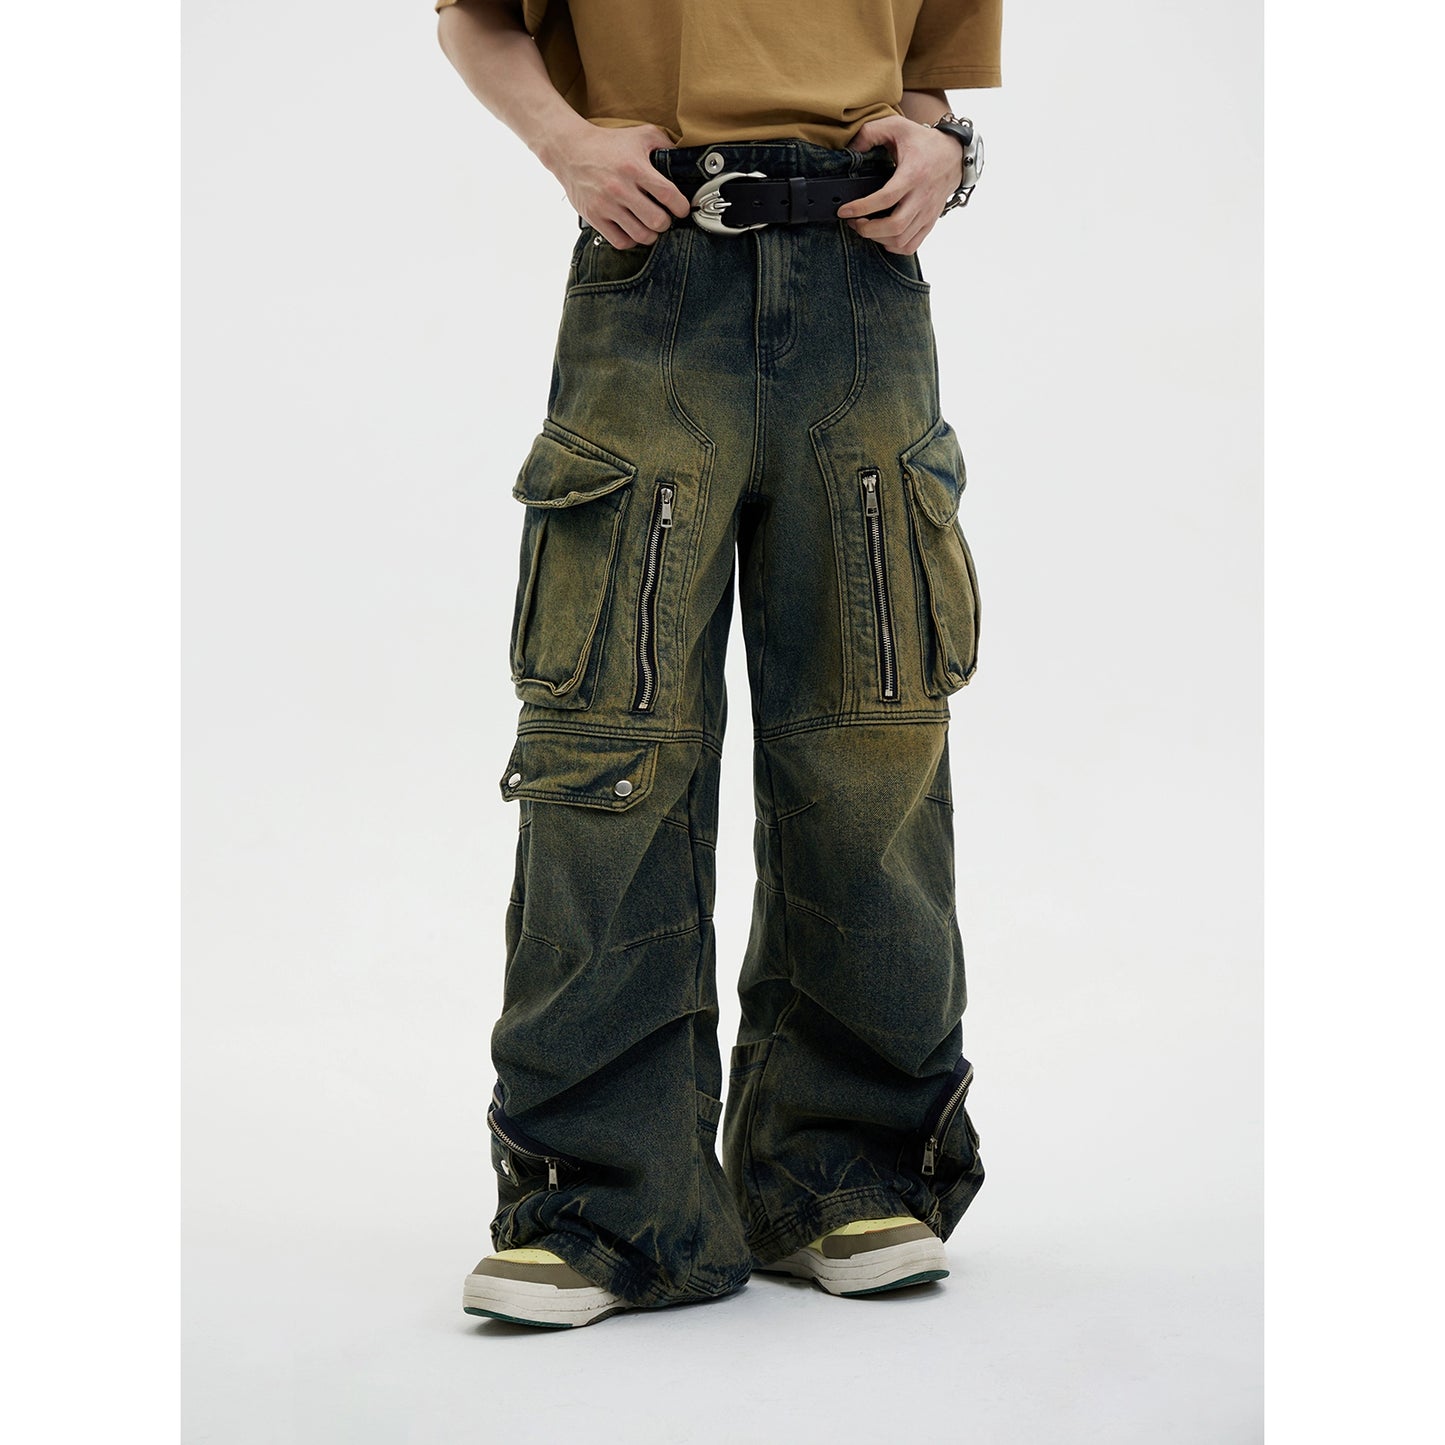 Ropa de trabajo retro - Jeans con múltiples bolsillos